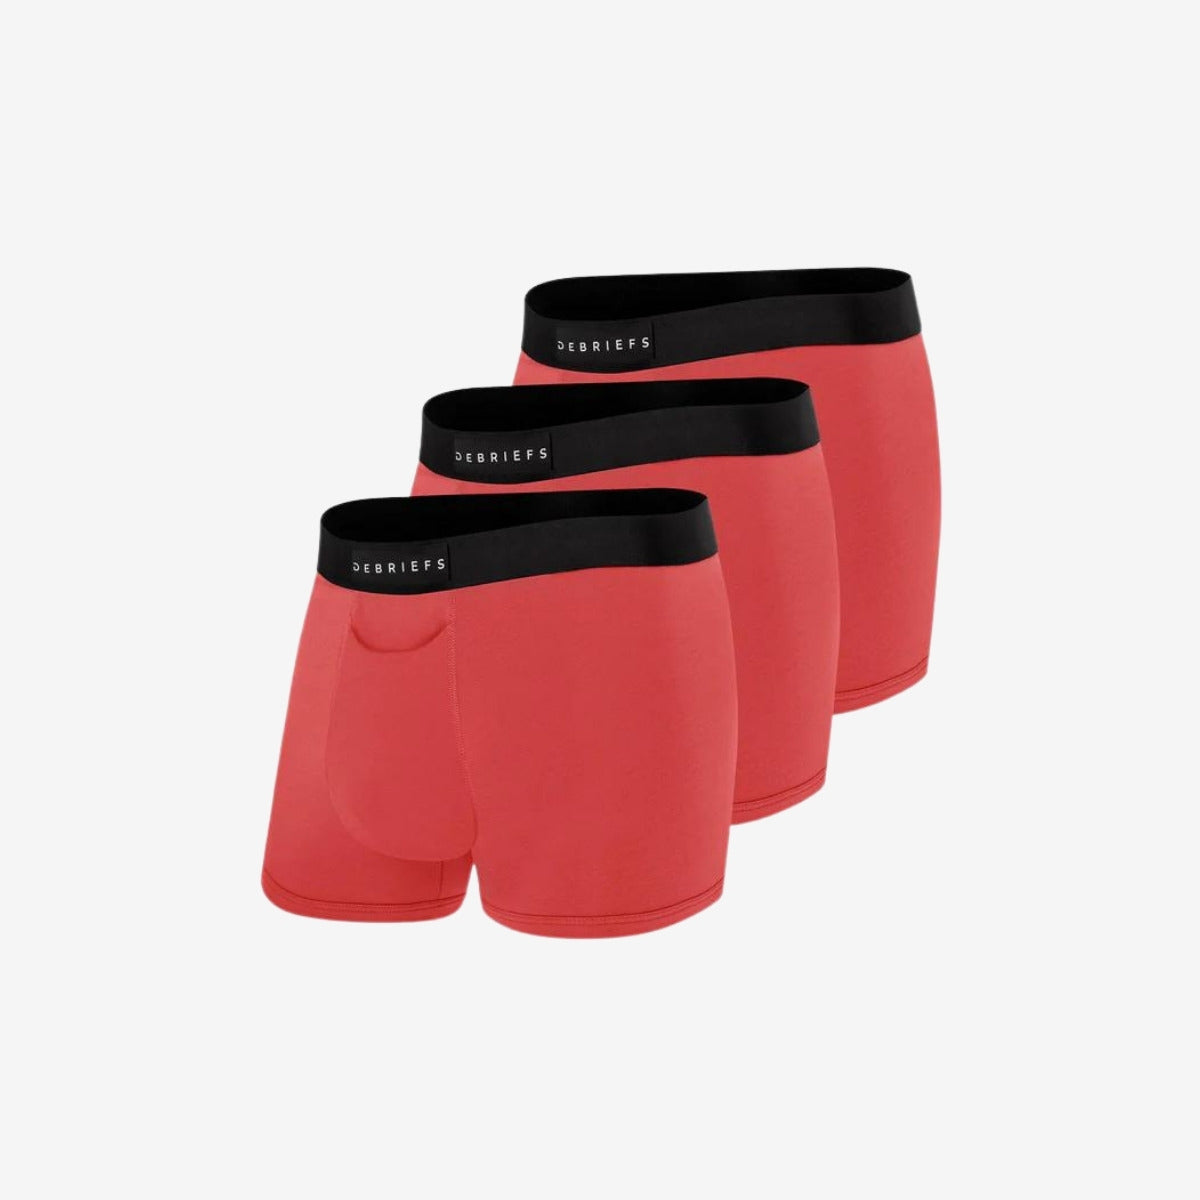 Mens Trunks Underwear Australia 3 Pack - All Red